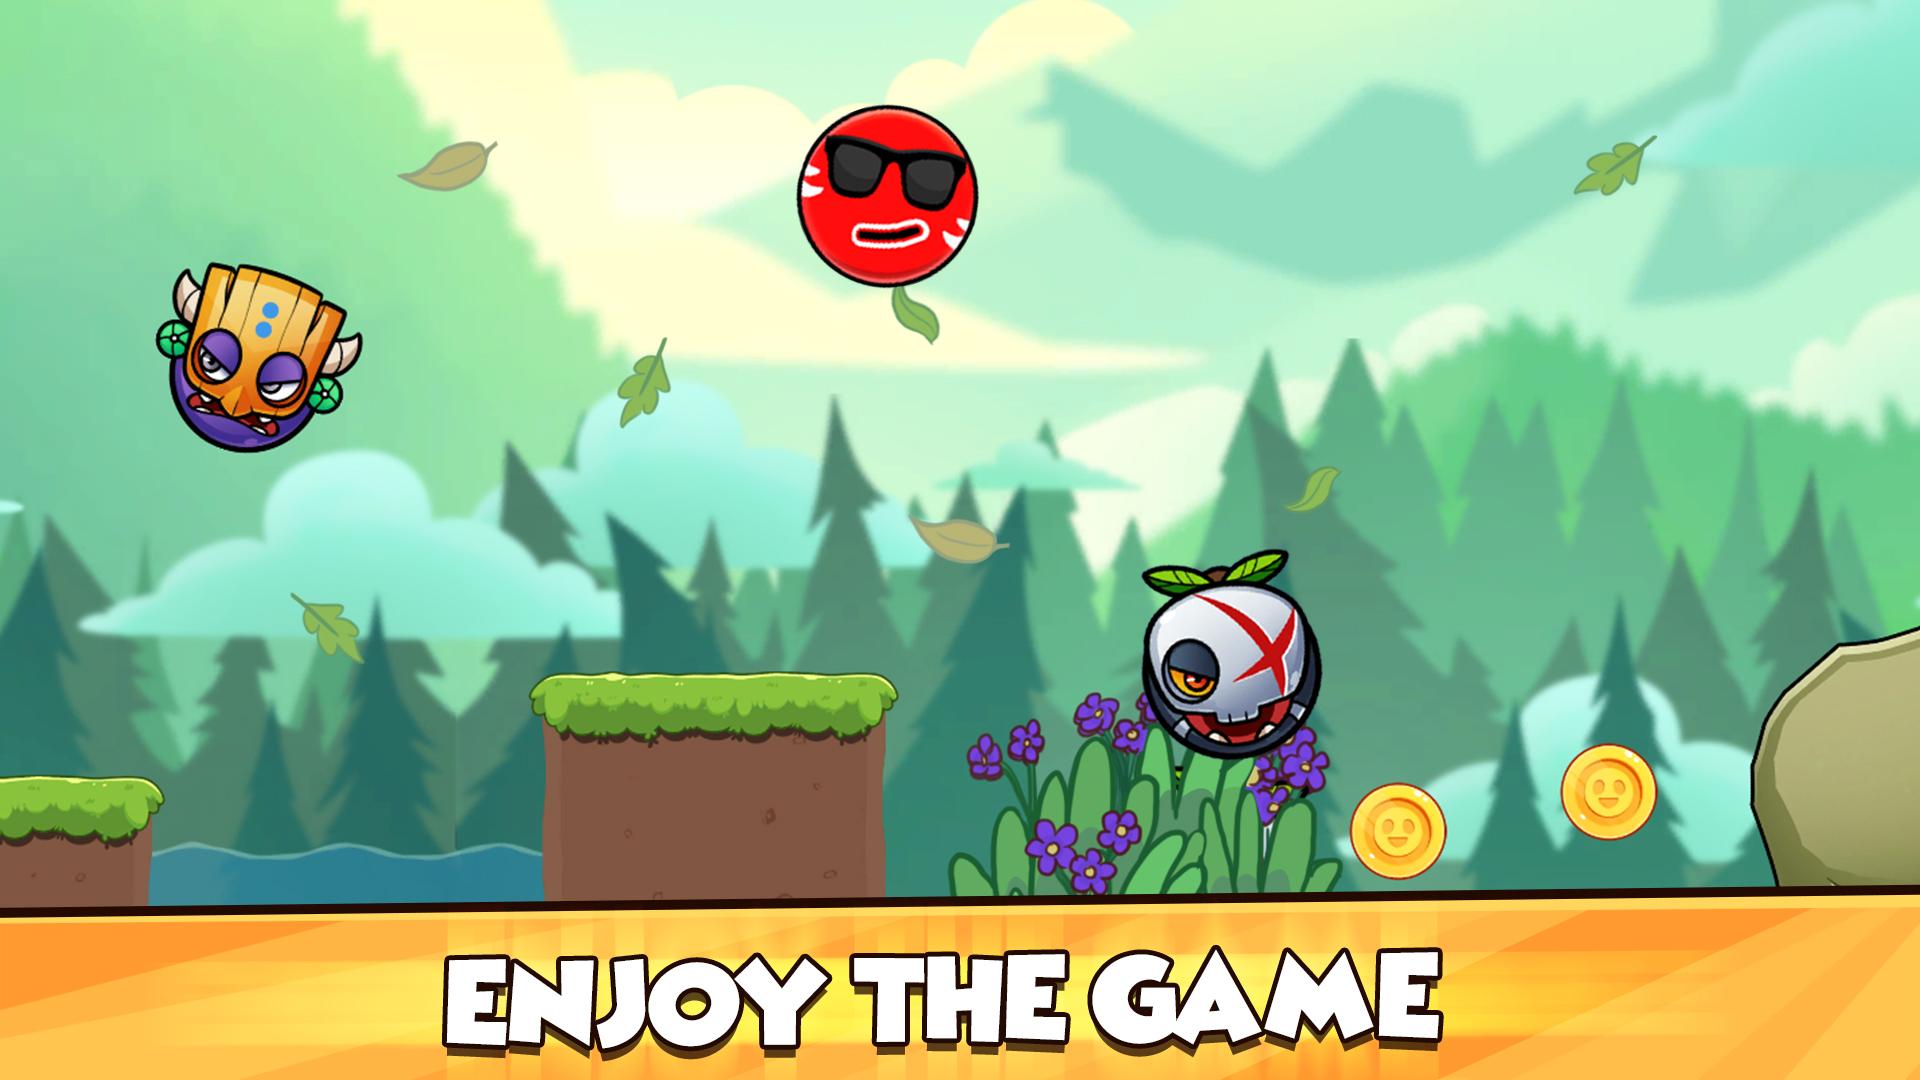 Red Ball - Roller Ball Adventure: Bounce Ball 1.0.4 Screenshot 13